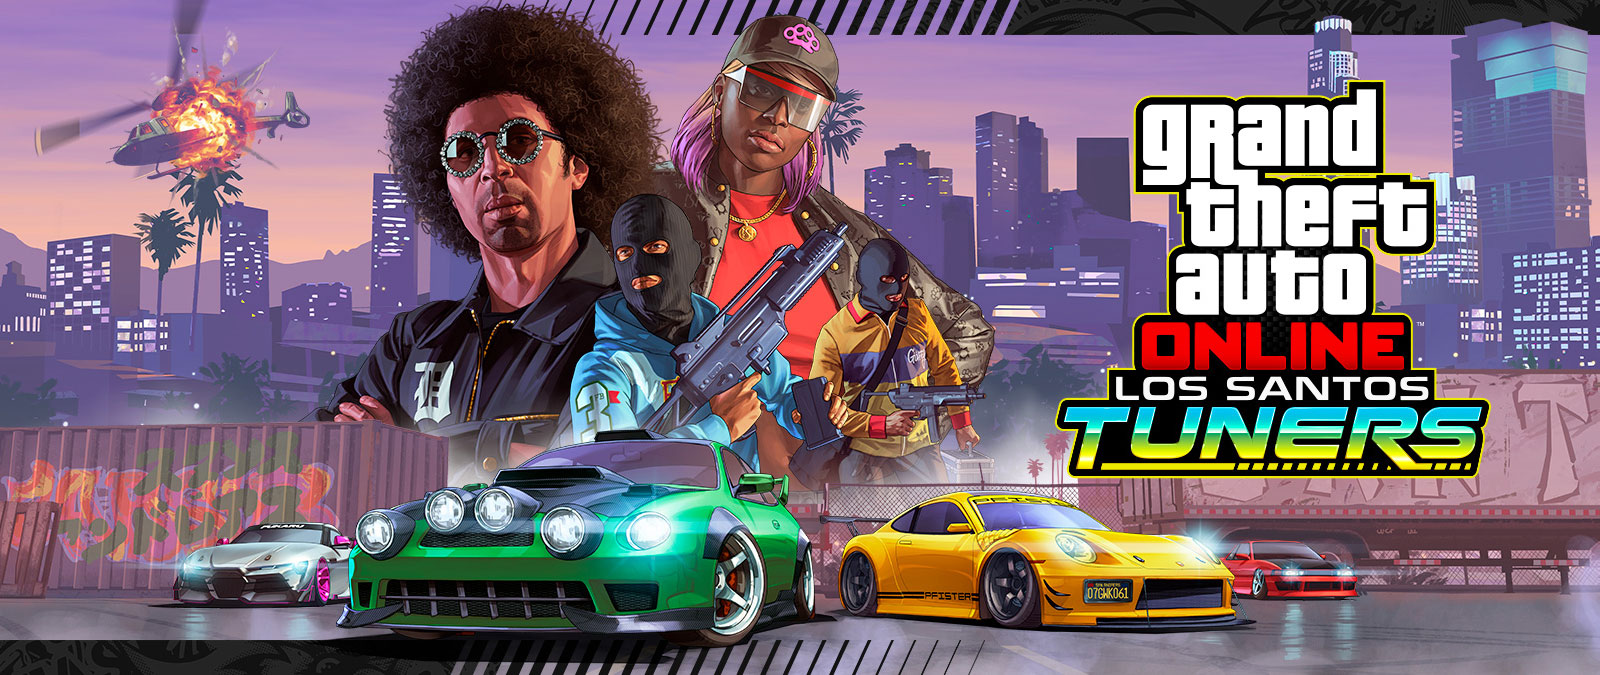 Grand Theft Auto Online, обновление Los Santos Tuners. Четыре персонажа позируют на фоне городского пейзажа, стоя на четырех супермашинах 